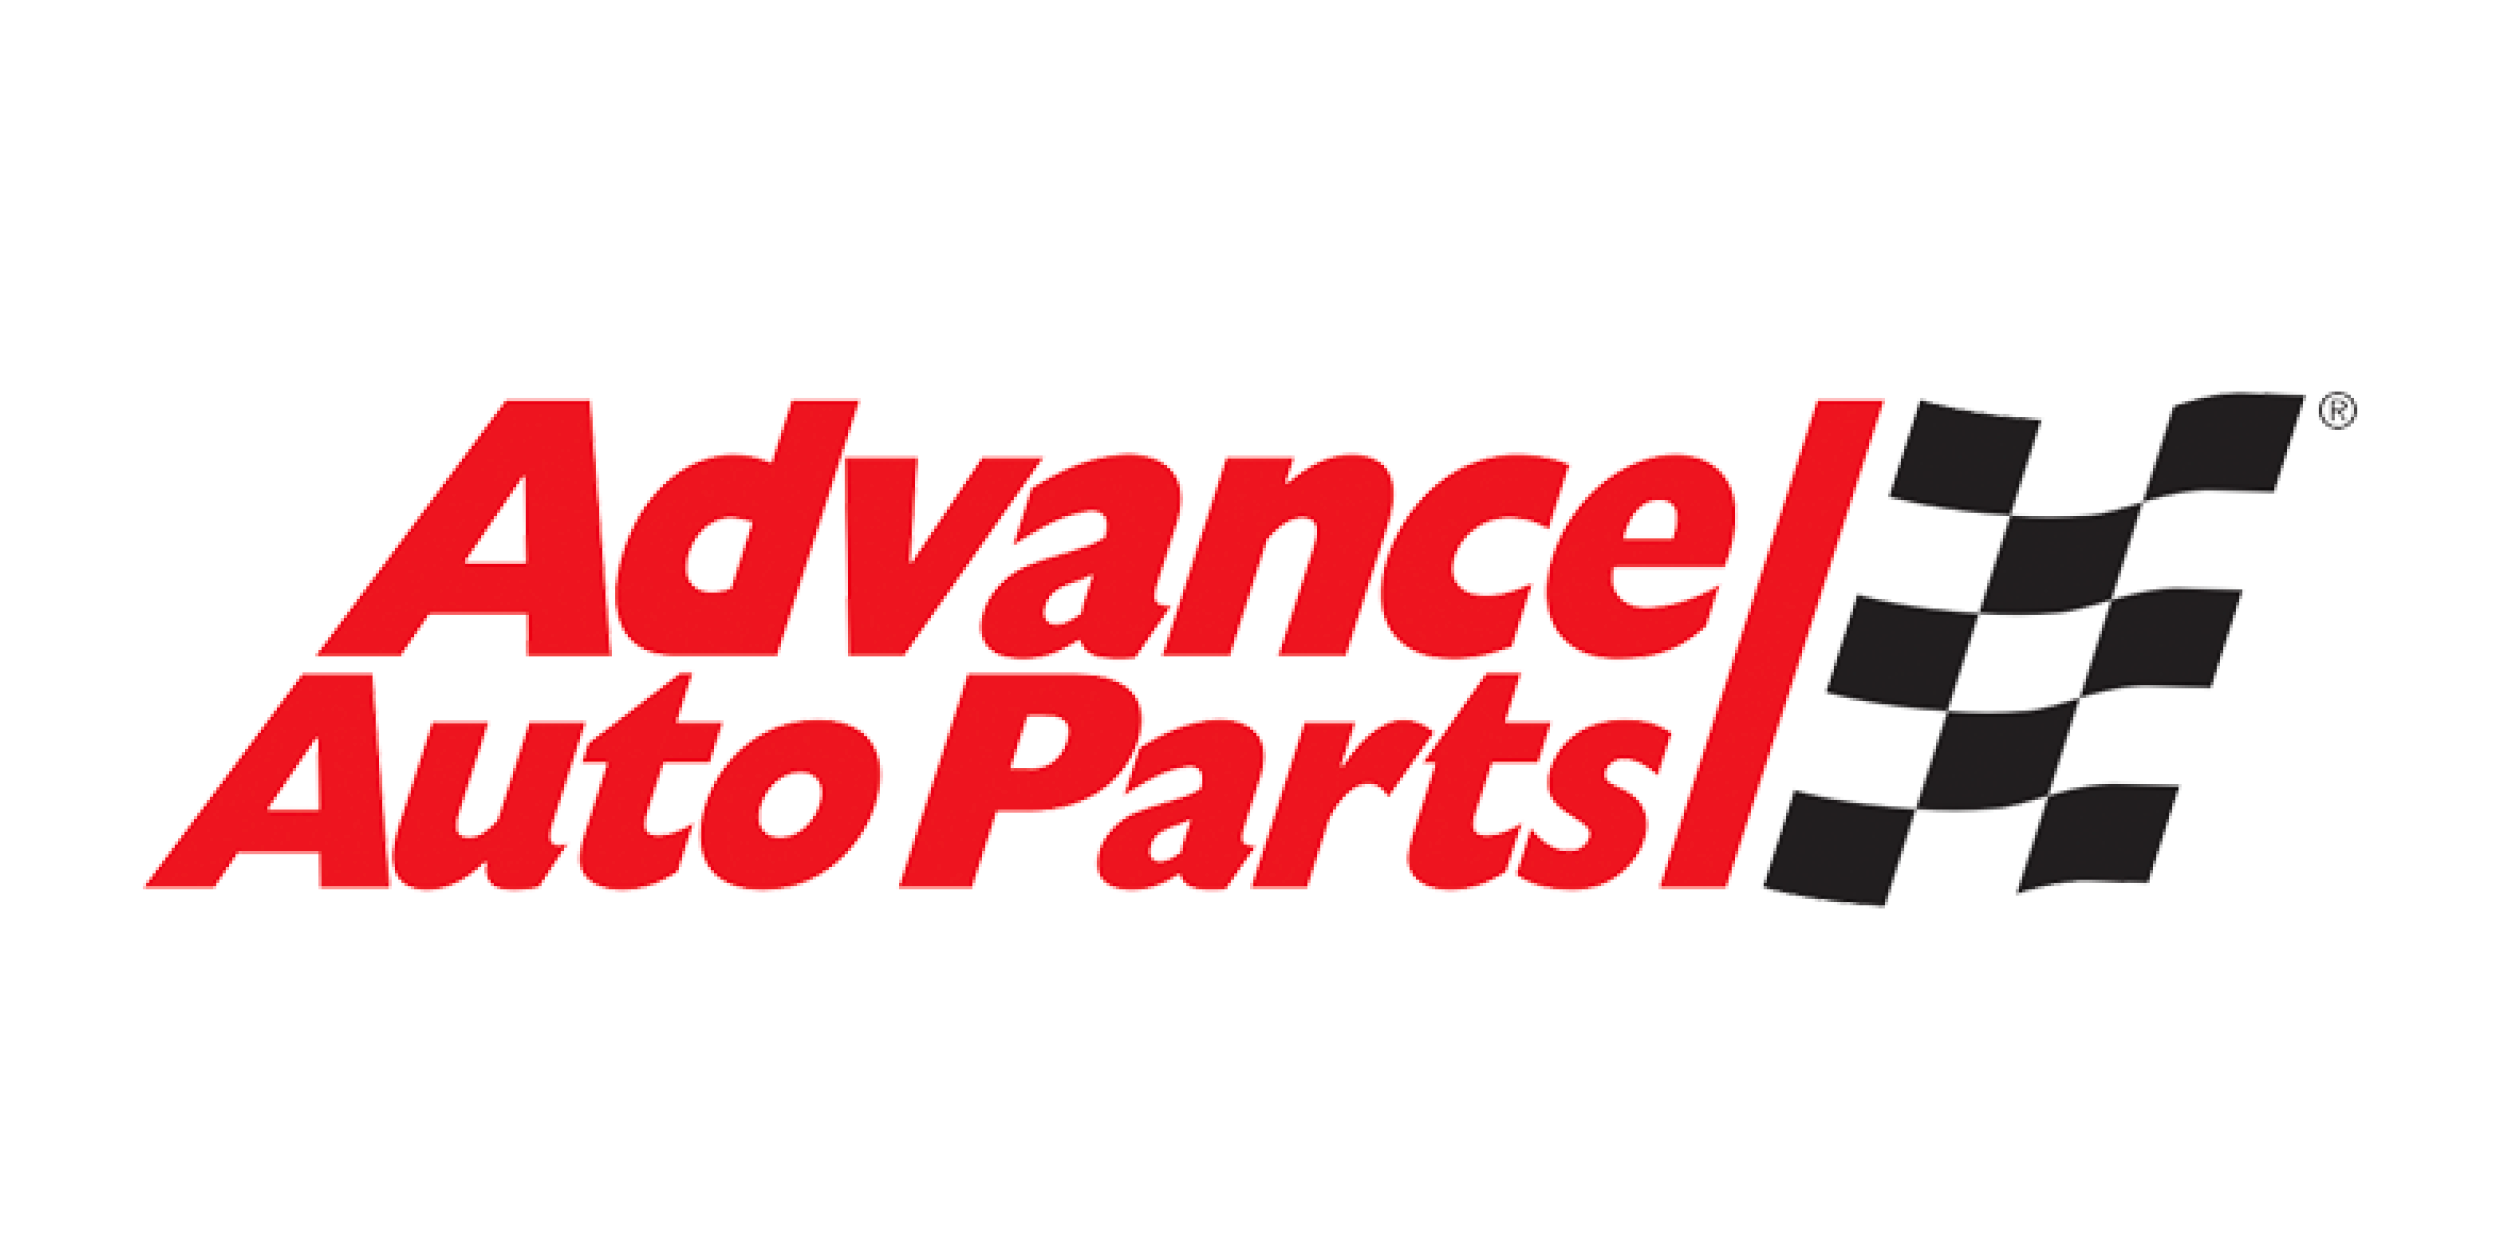 north carolina companies fortune 500 list advance auto parts